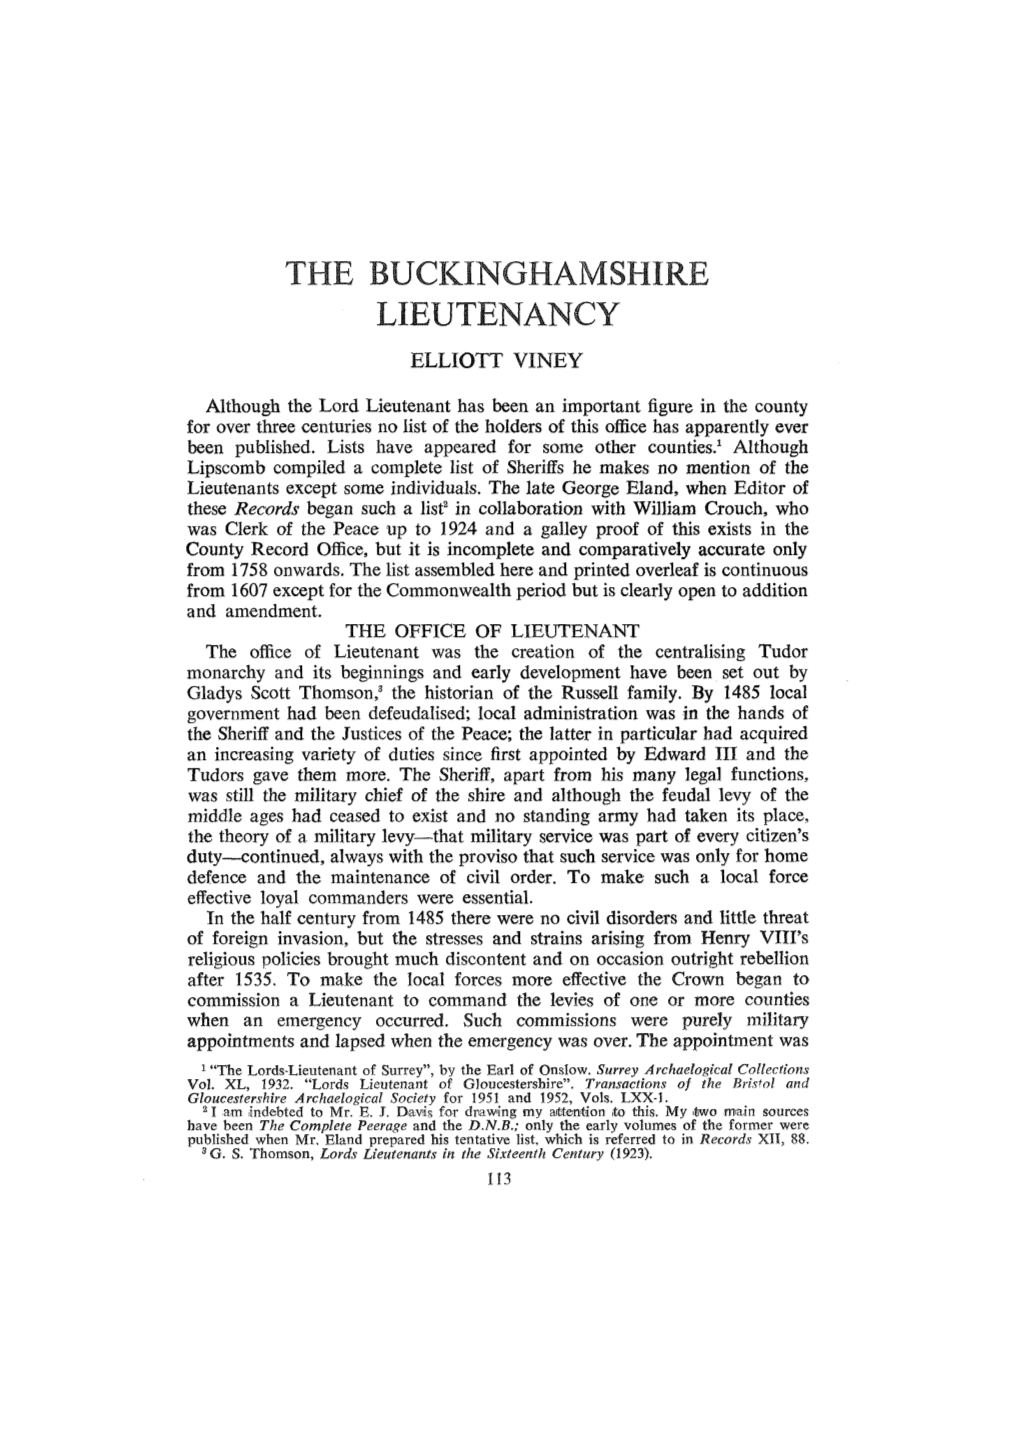 The Buckinghamshire